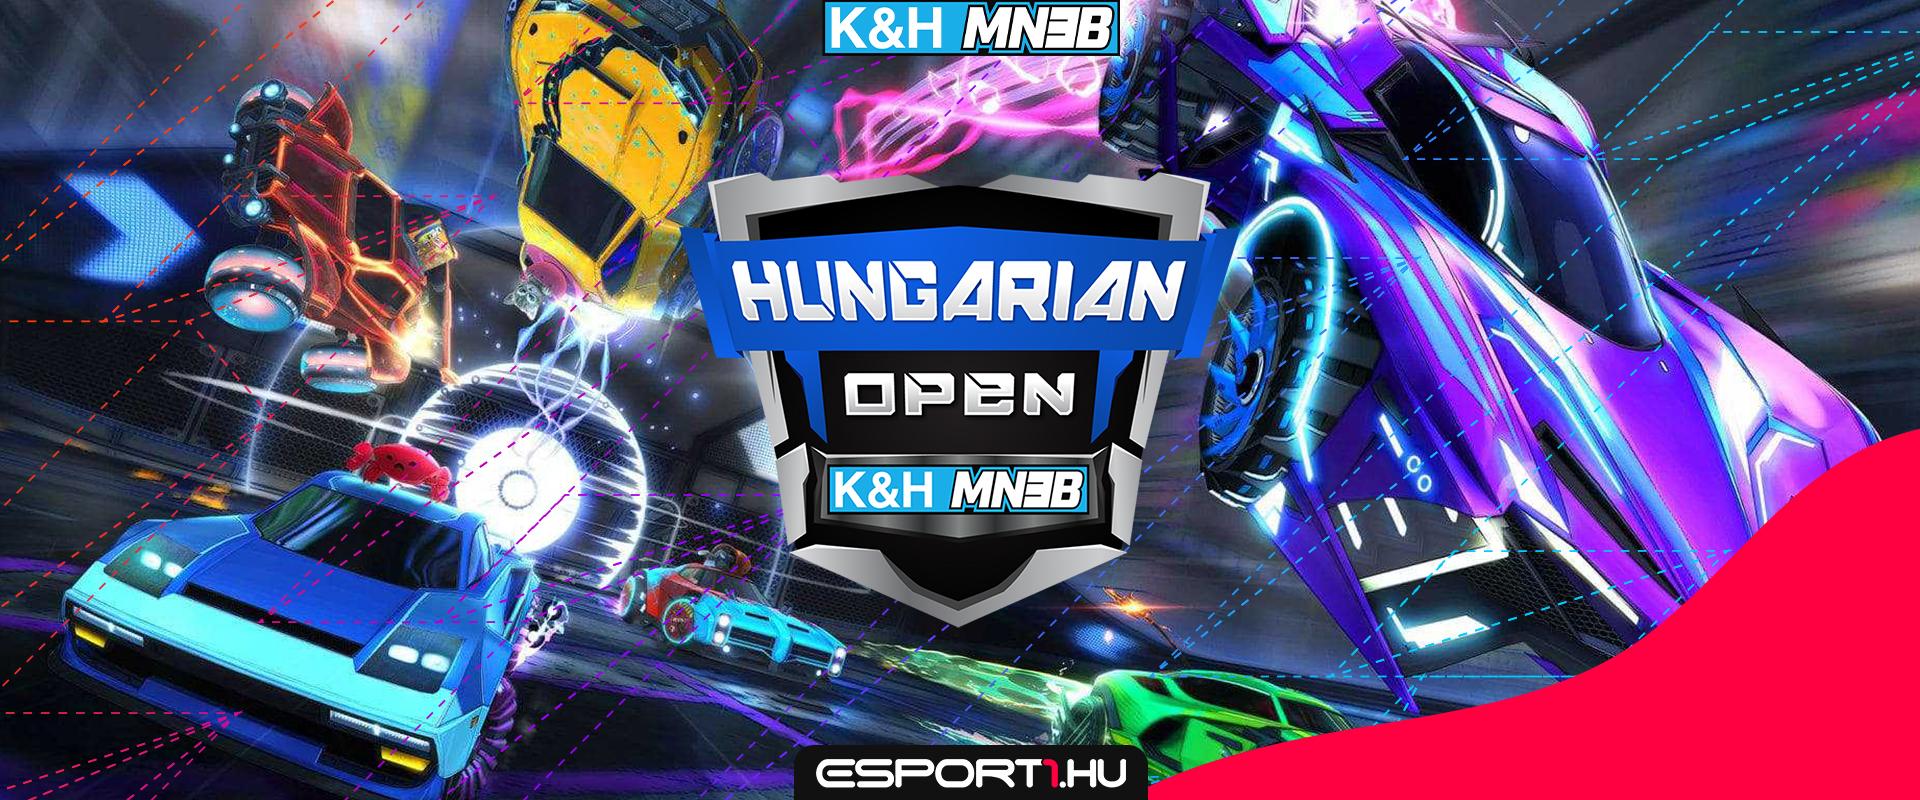 Teljessé vált a Hungarian Open csoportkörének névsora